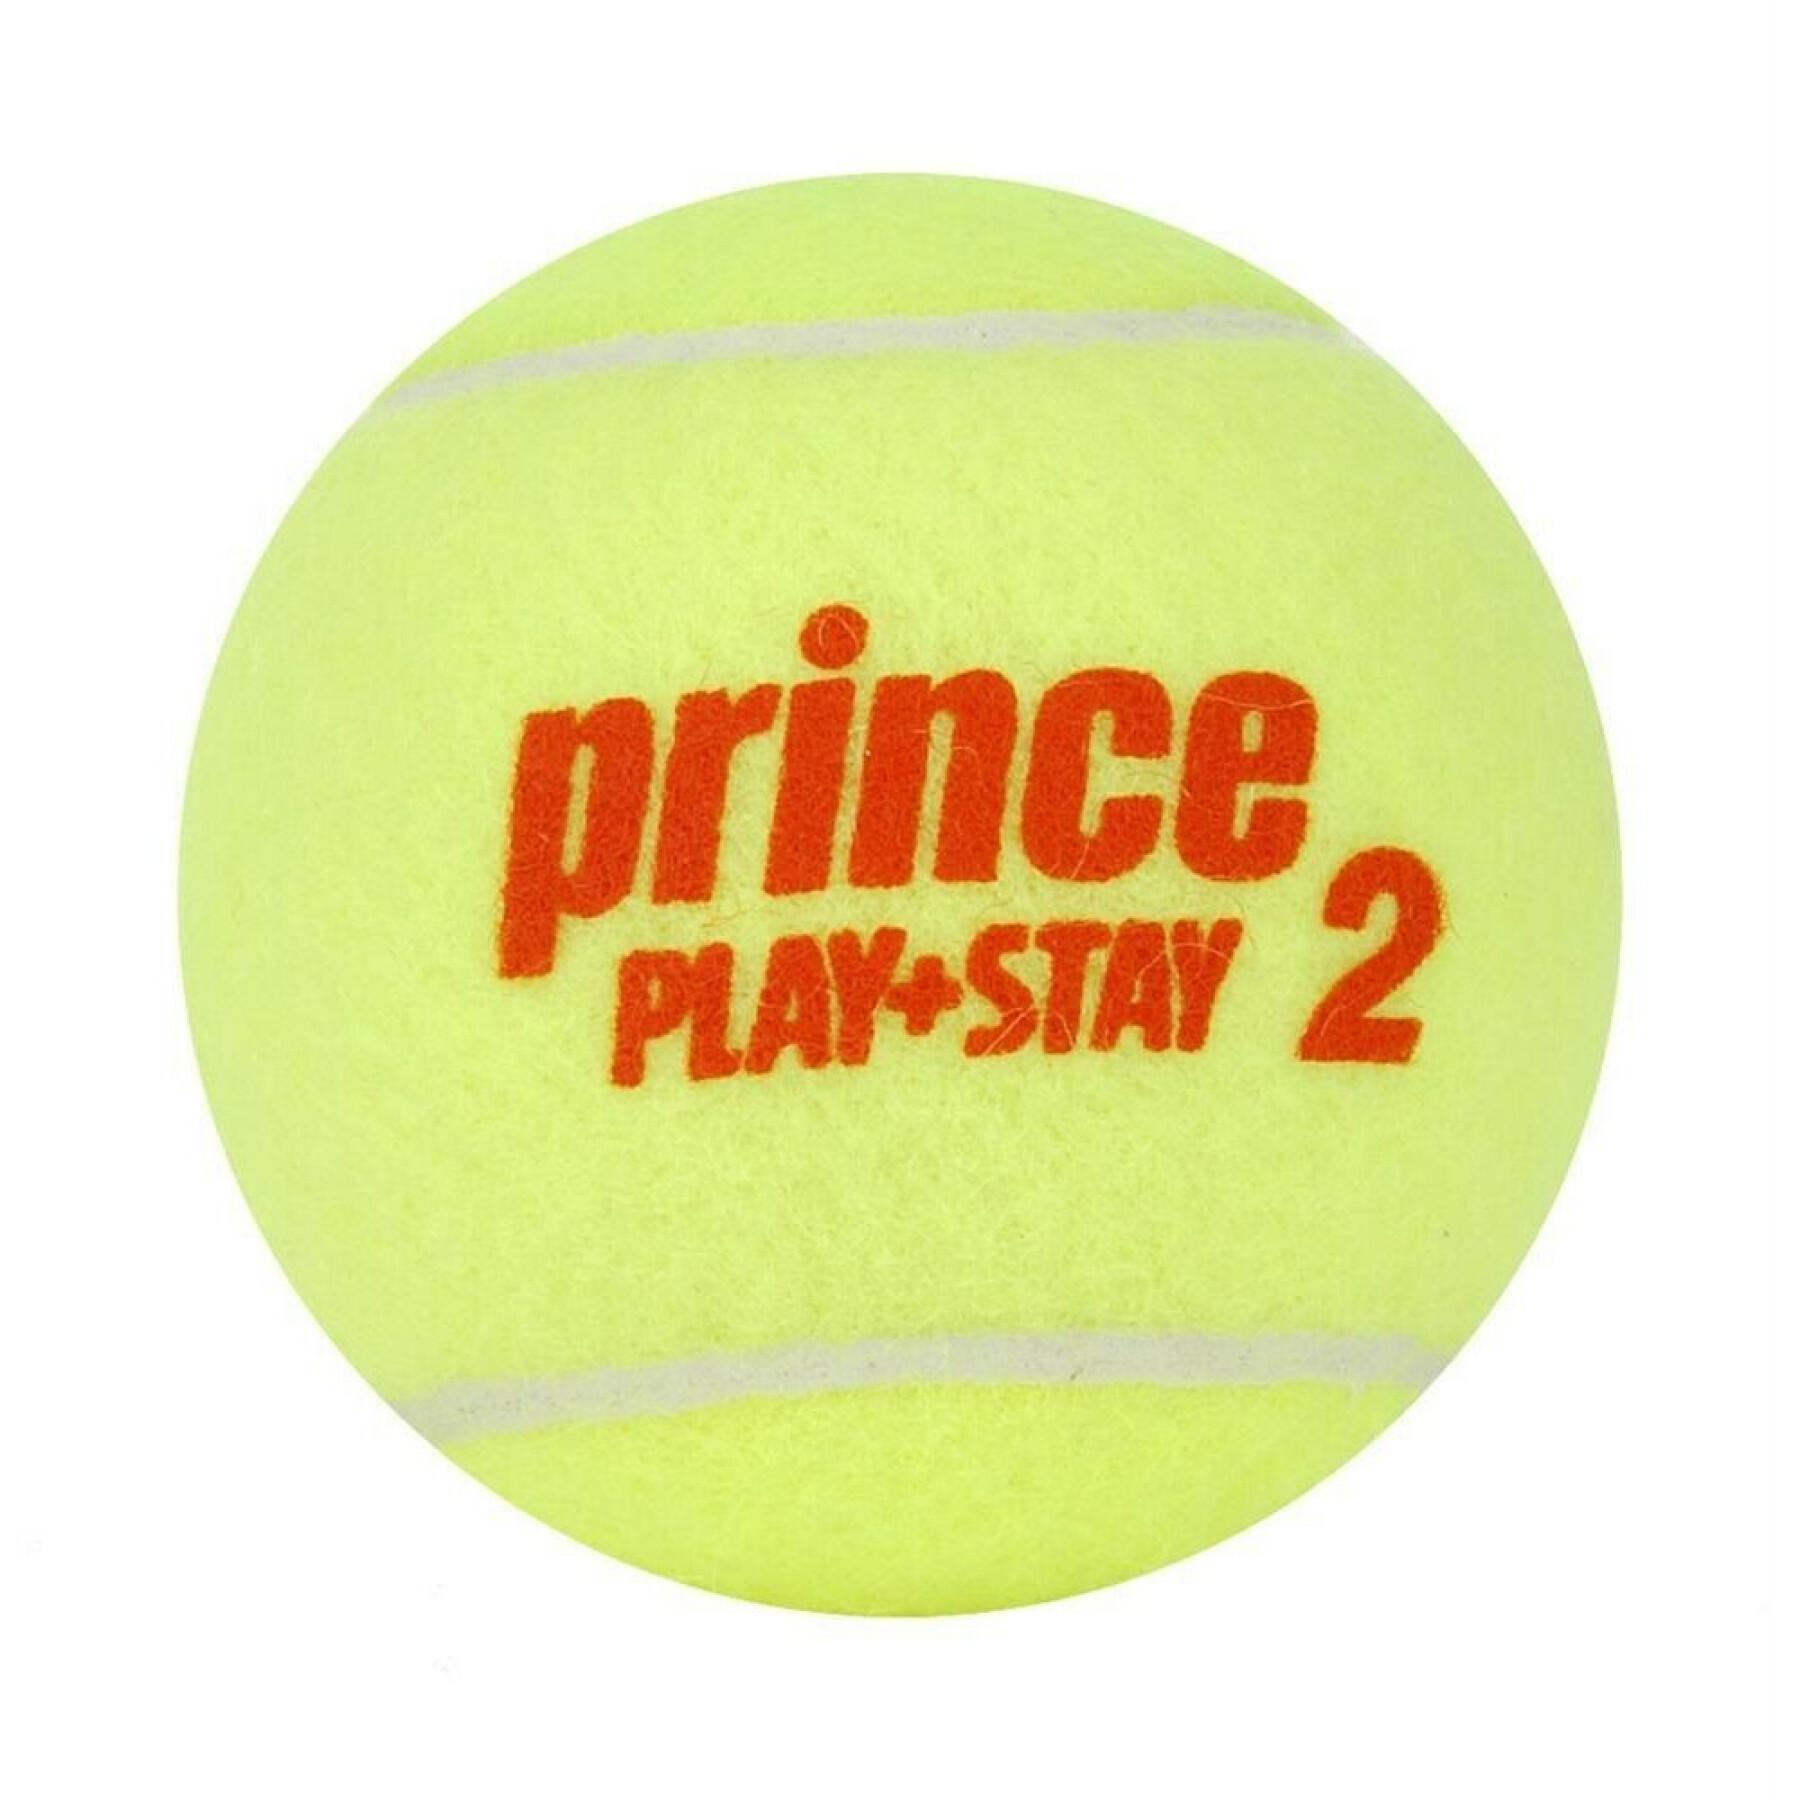 Tubo de 3 bolas de ténis Prince Play & Stay - stage 2